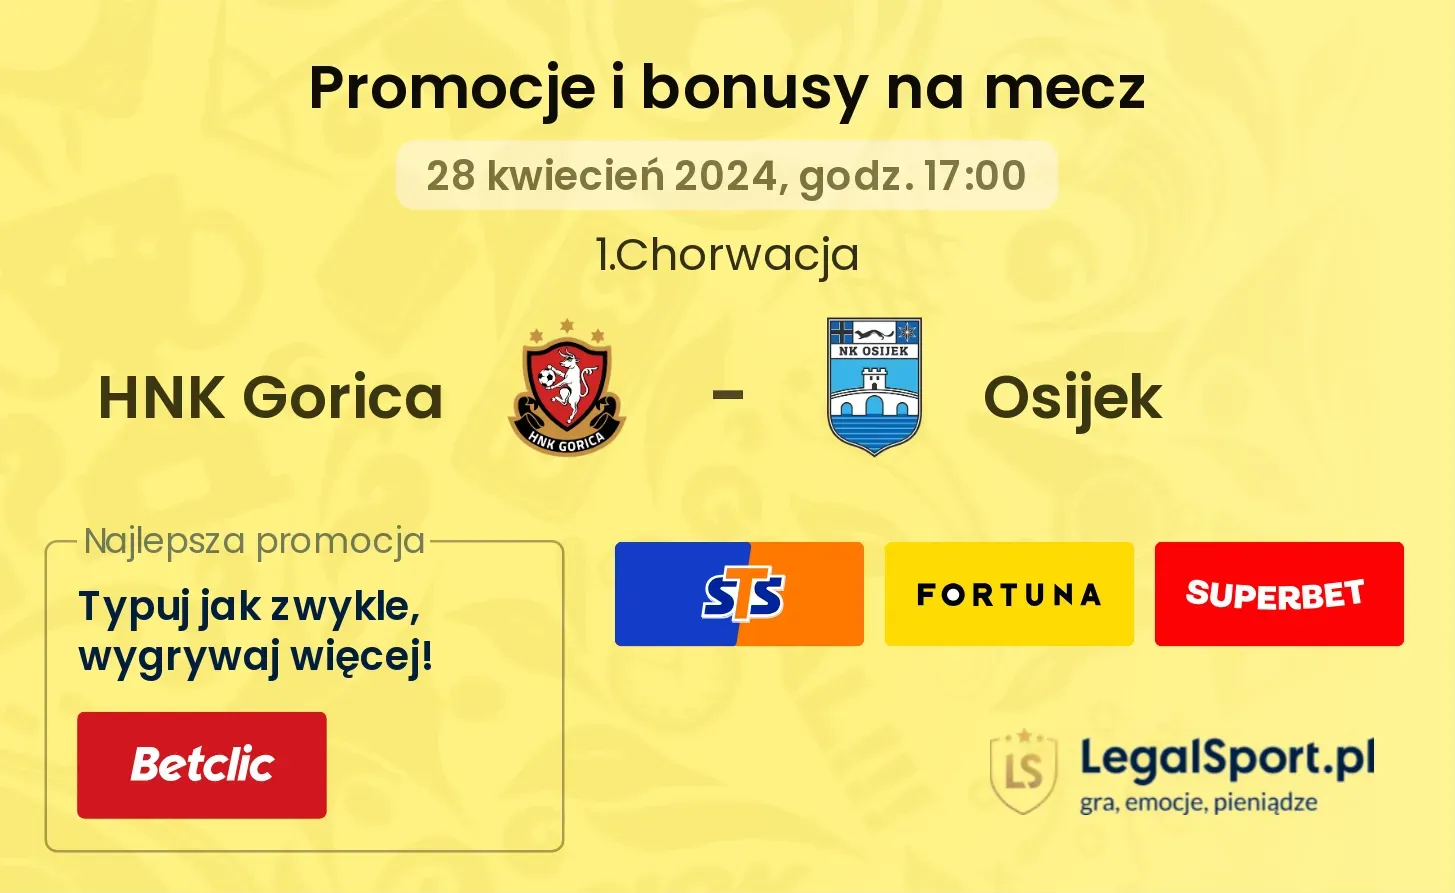 HNK Gorica - Osijek promocje bonusy na mecz